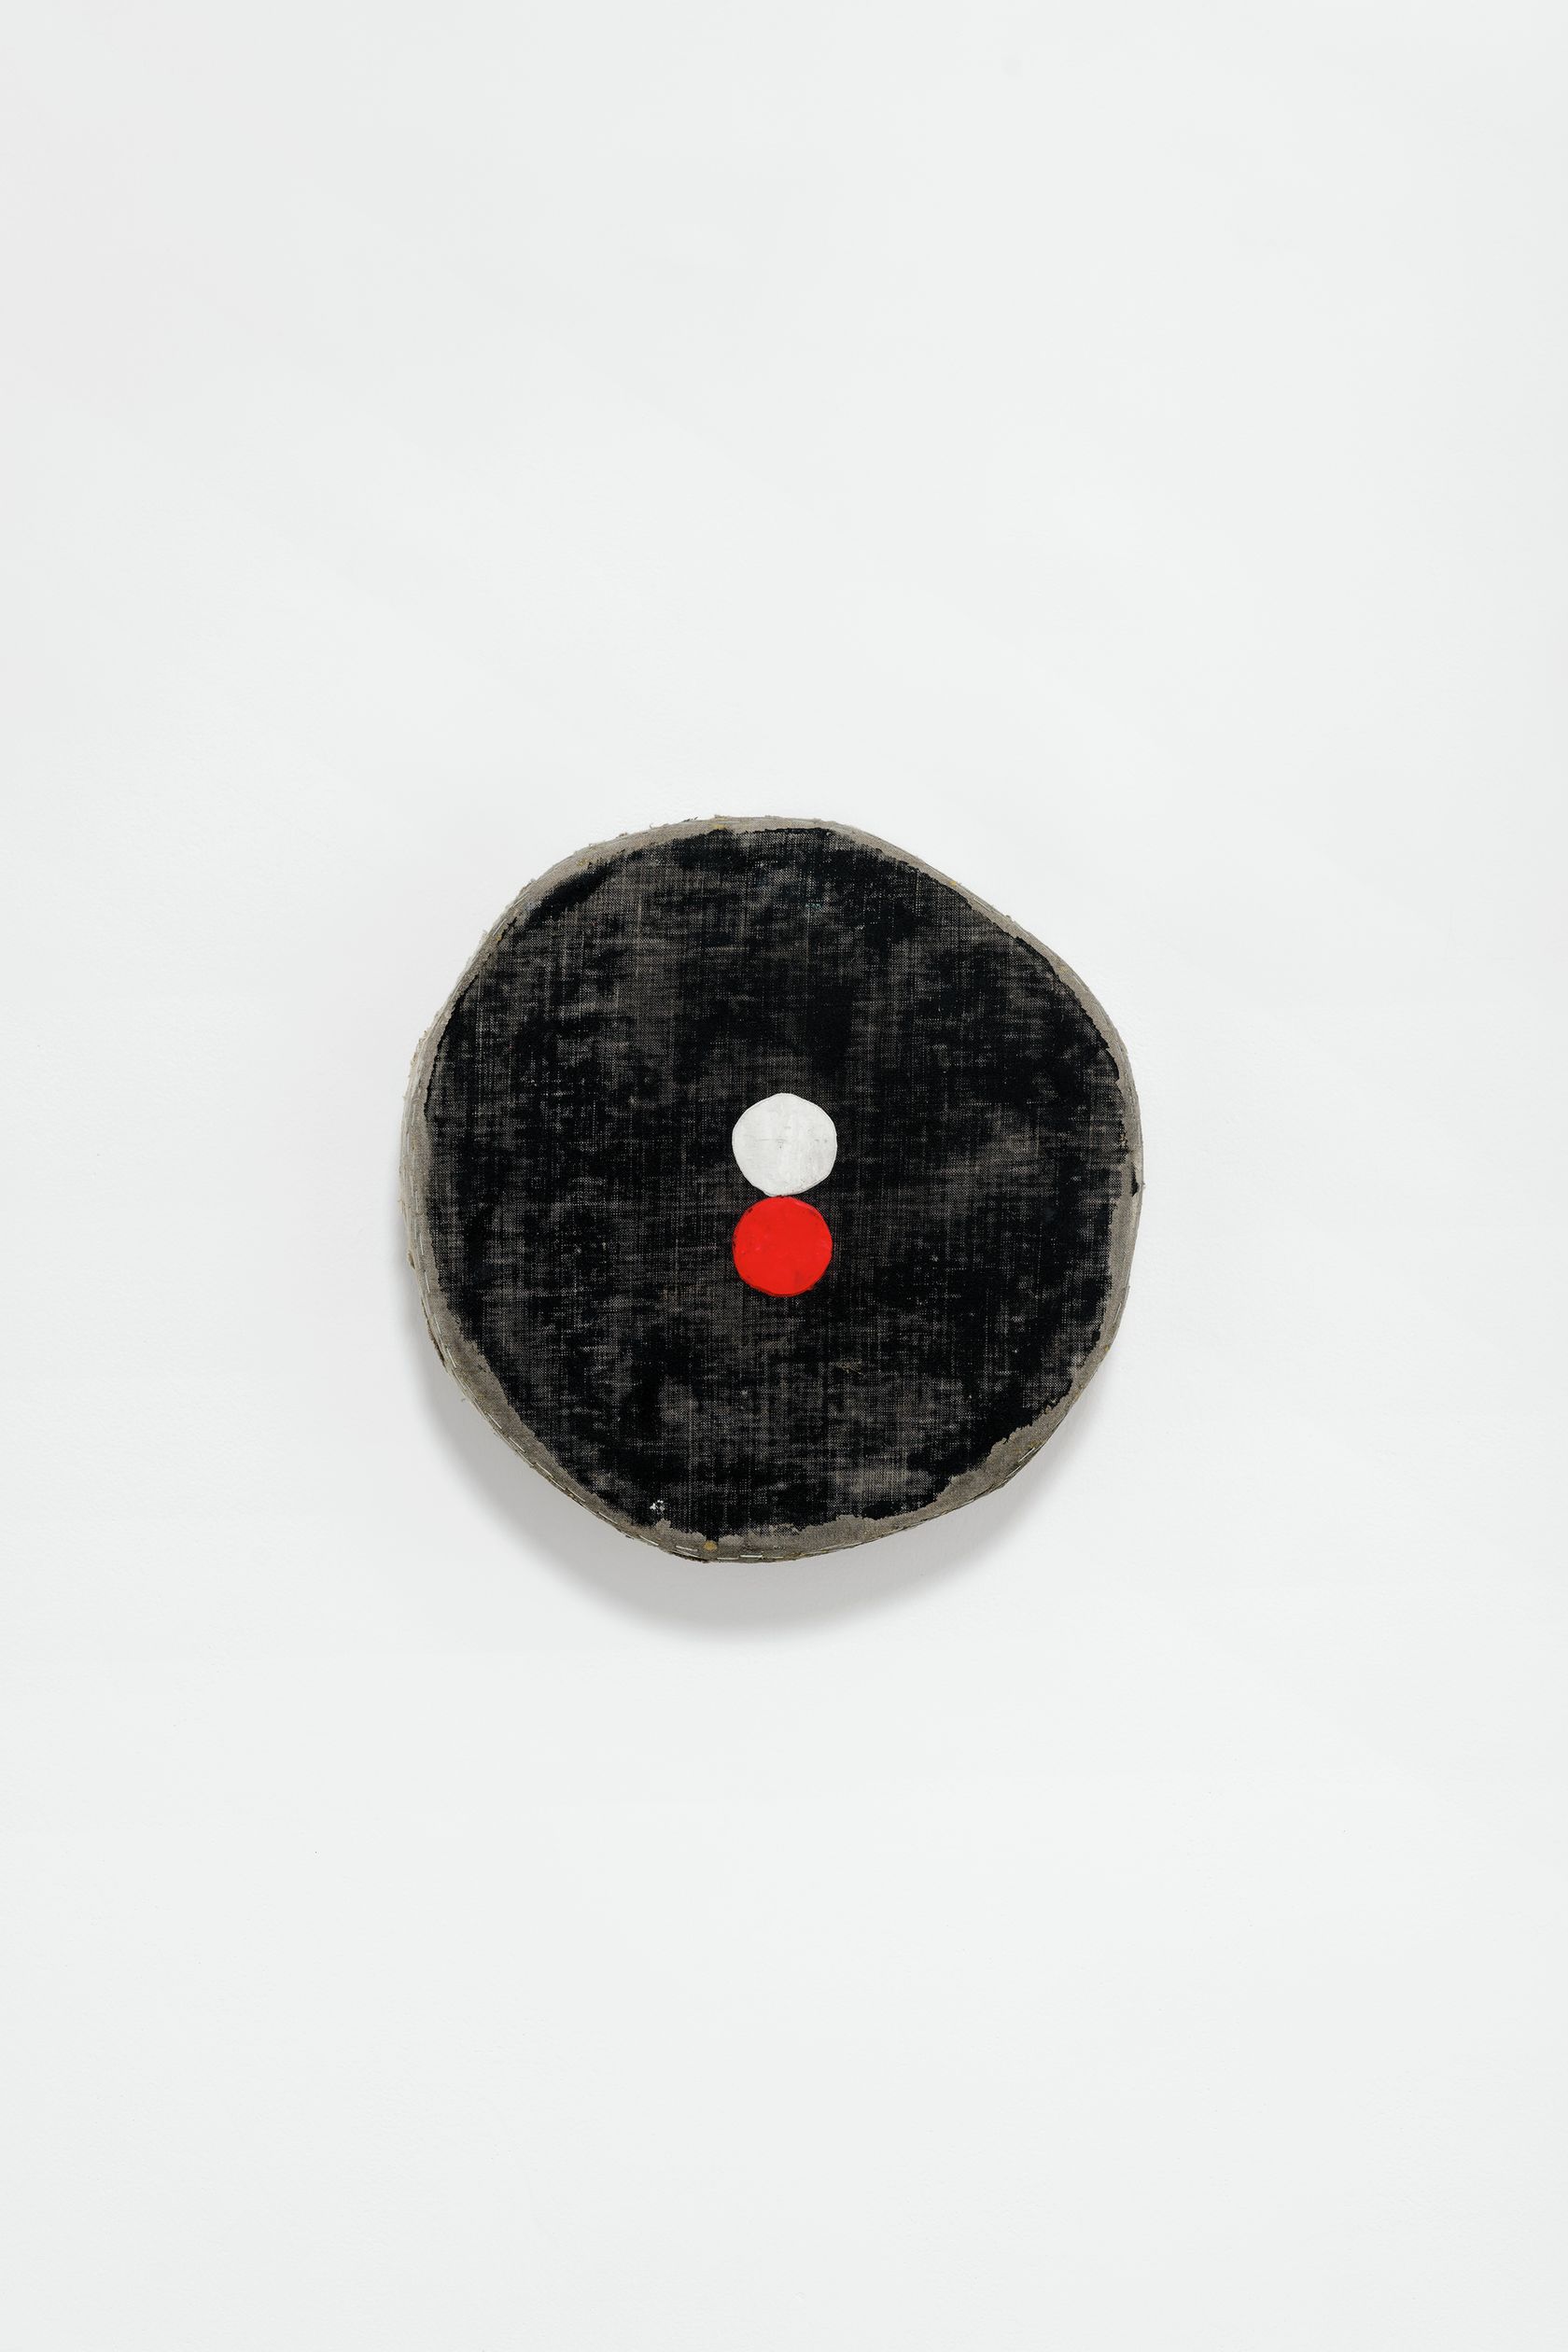 Otis Jones, Black Circle with Stacked White and Red Circle, 2022 Acrylique sur toile sur panneau de bois39.5 × 39.5 × 8 cm / 15 1/2 × 15 1/2 × 3 in.